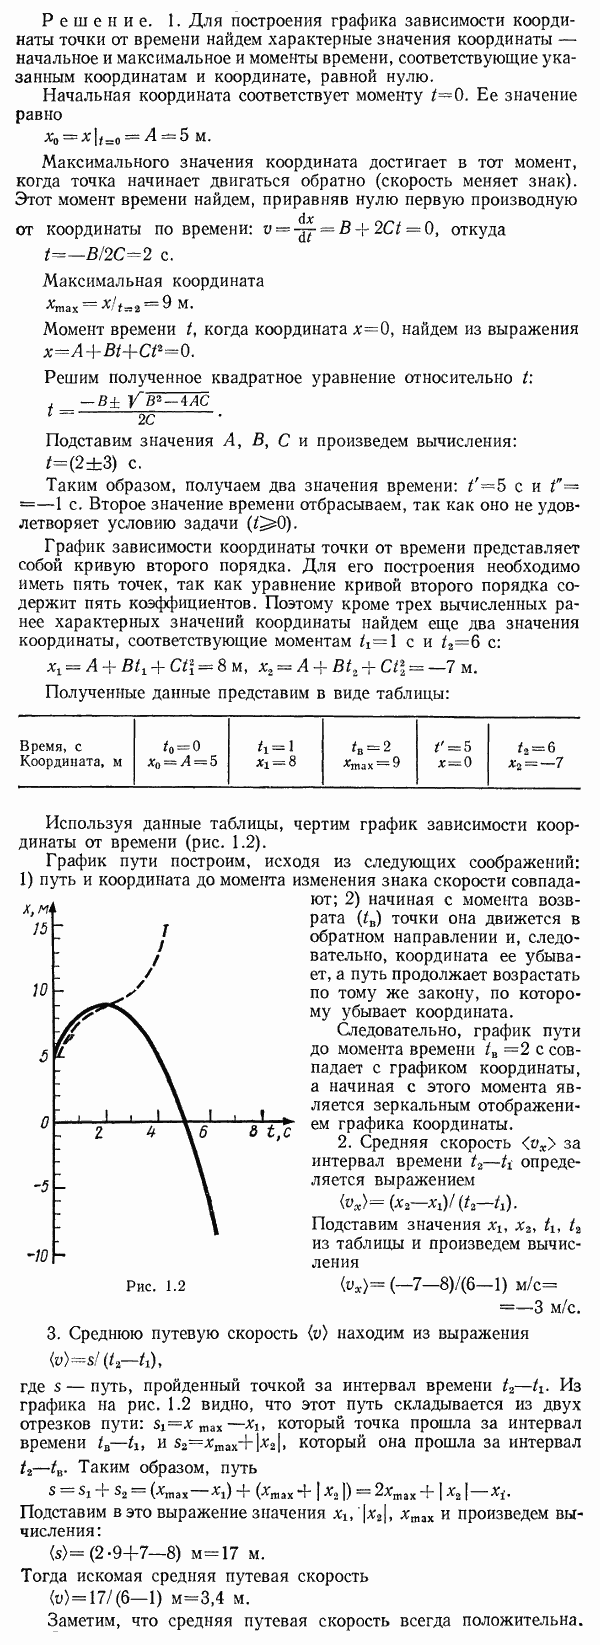 Кинематическое уравнение движения материальной точки по прямой ось x имеет вид x=A+Bt+Ct^2, где A=5 м, В=4 м/с, С=-1 м/с2. 1. Построить график